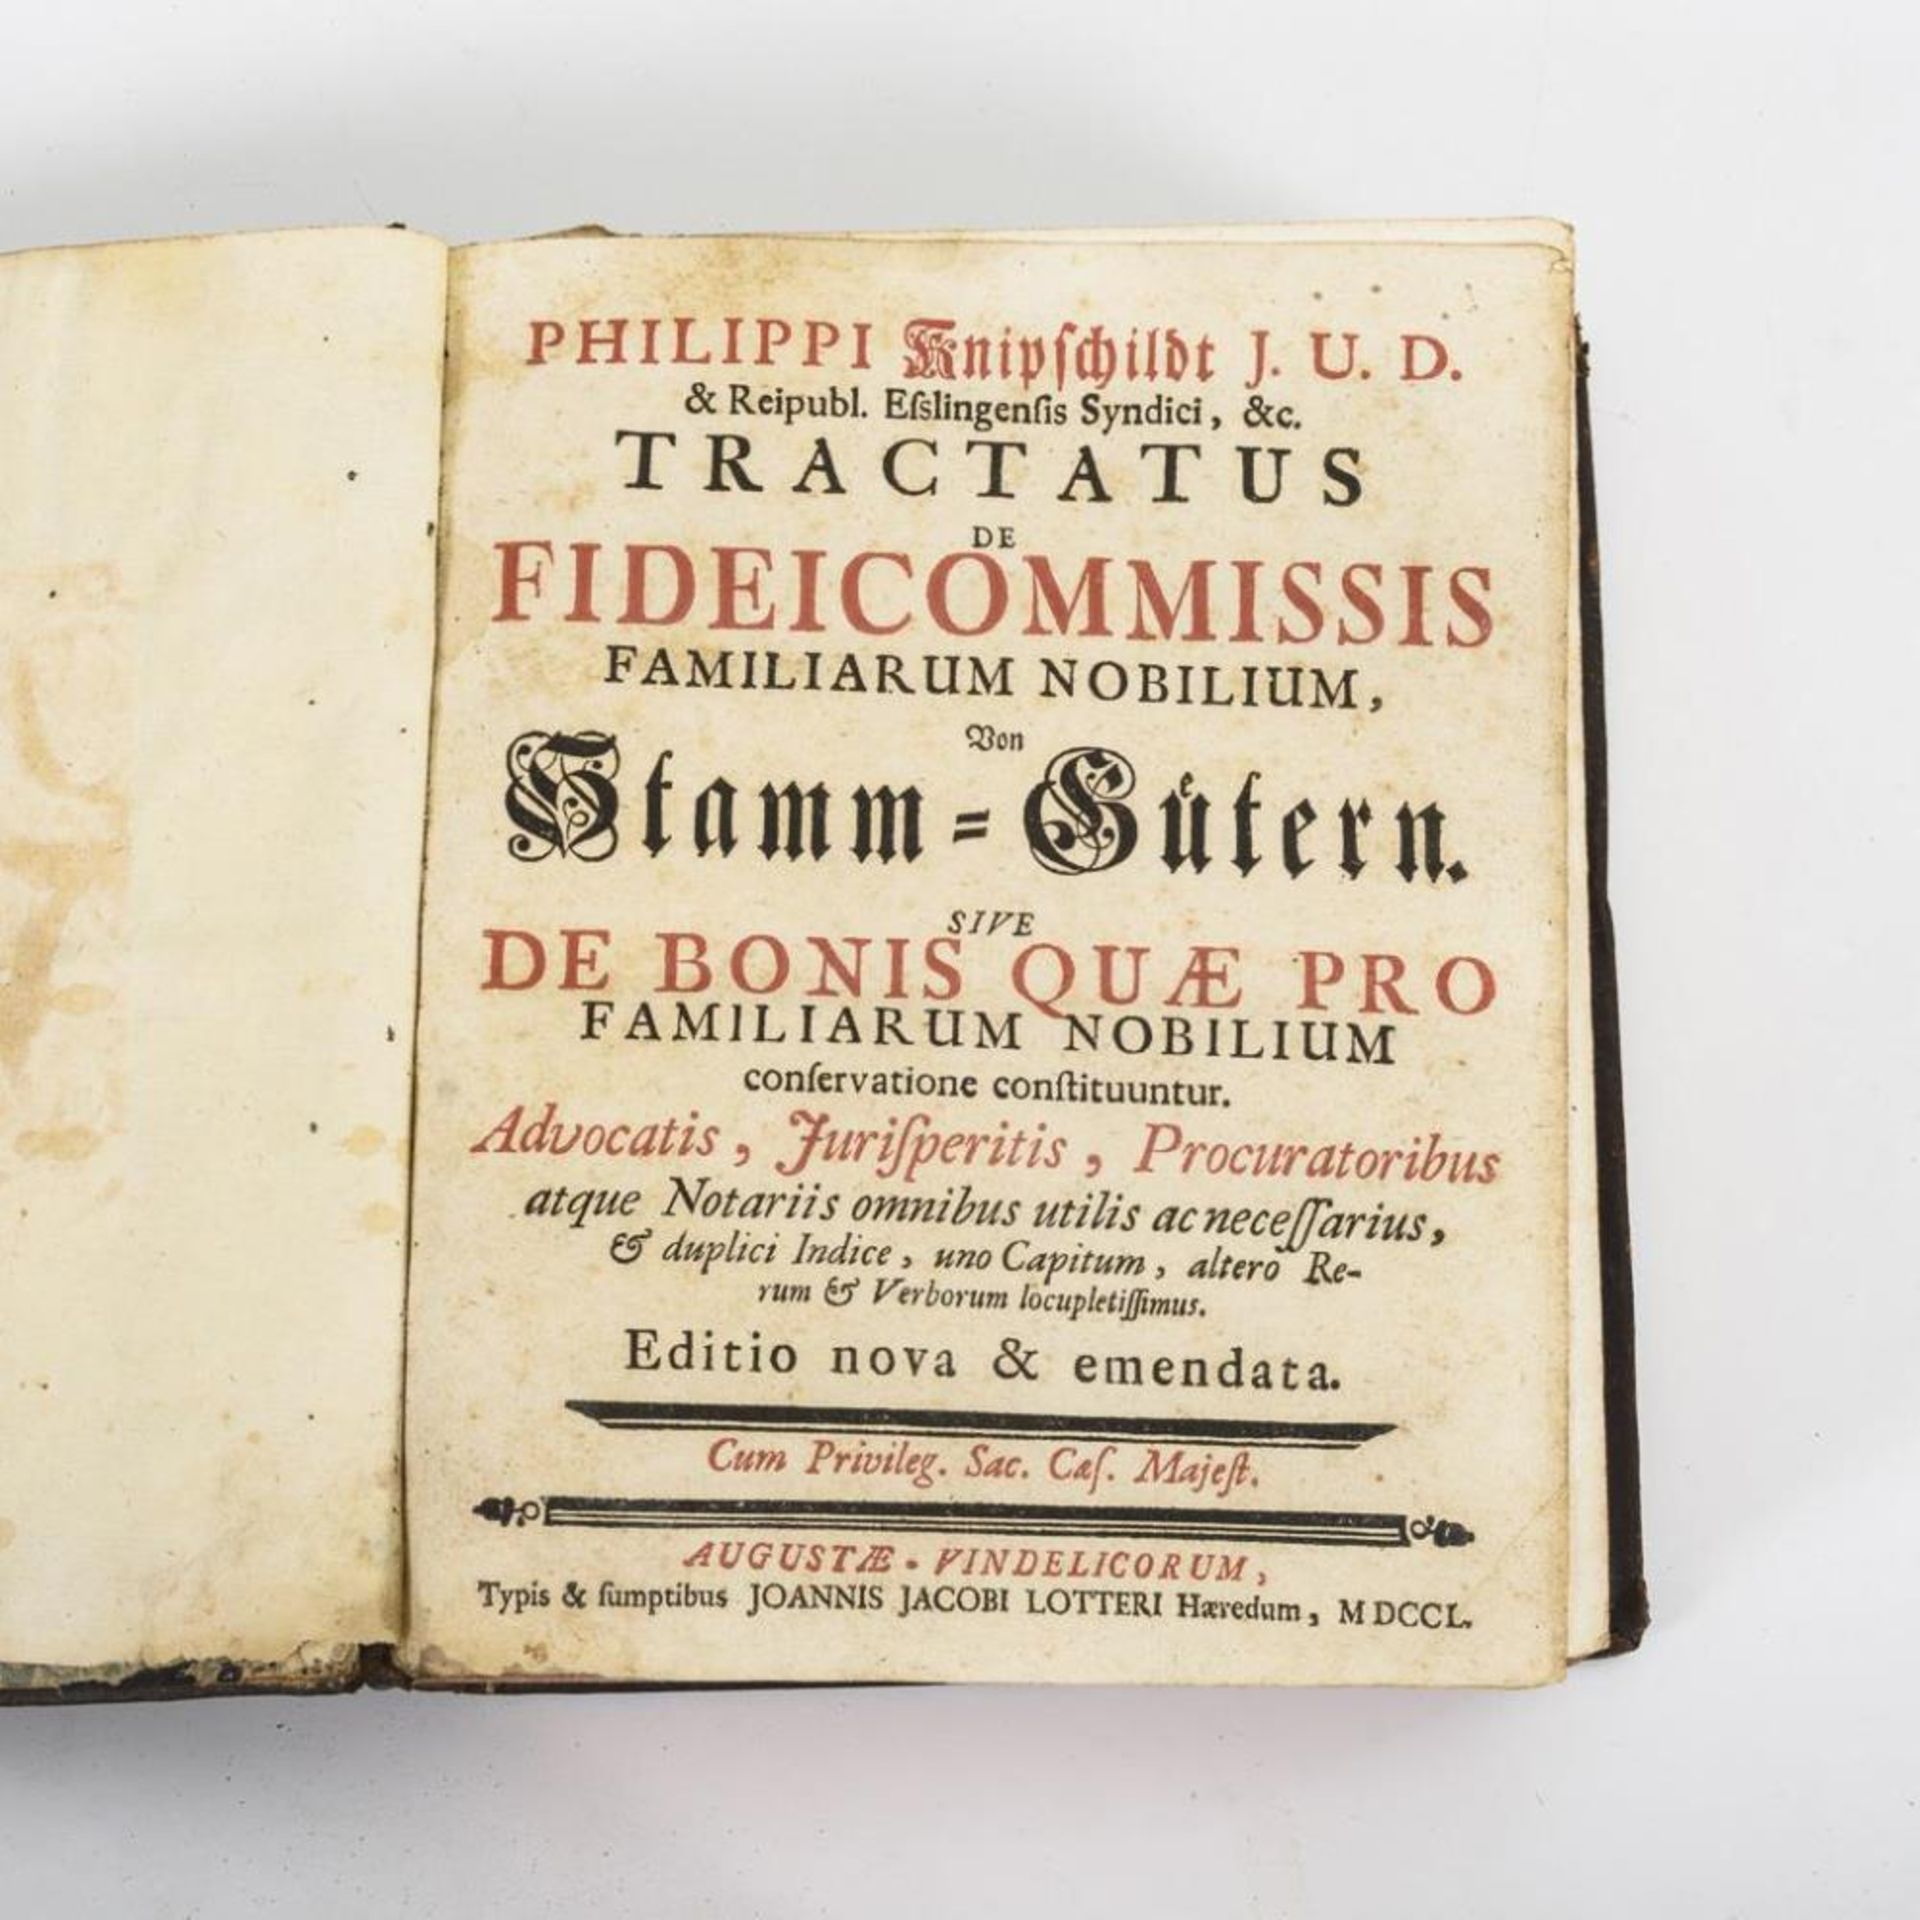 KNIPSCHILDT, Philippi. "Tractatus de Fideicommissis familiarum nobilium".